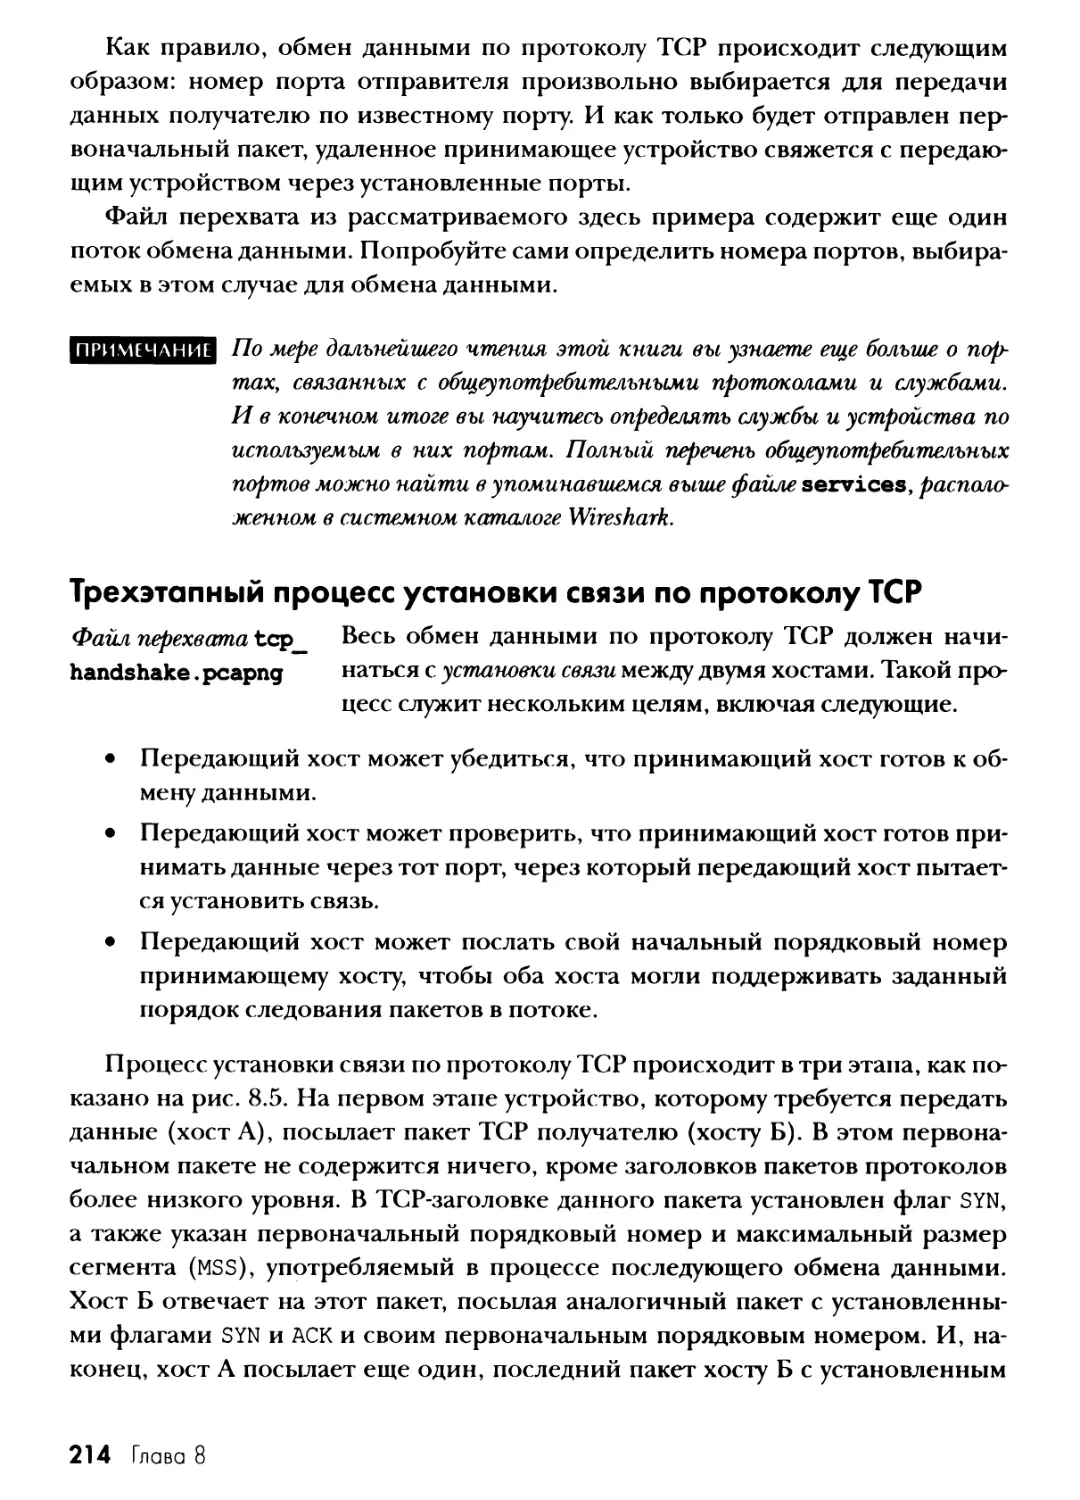 Трехэтапный процесс установки связи по протоколу TCP